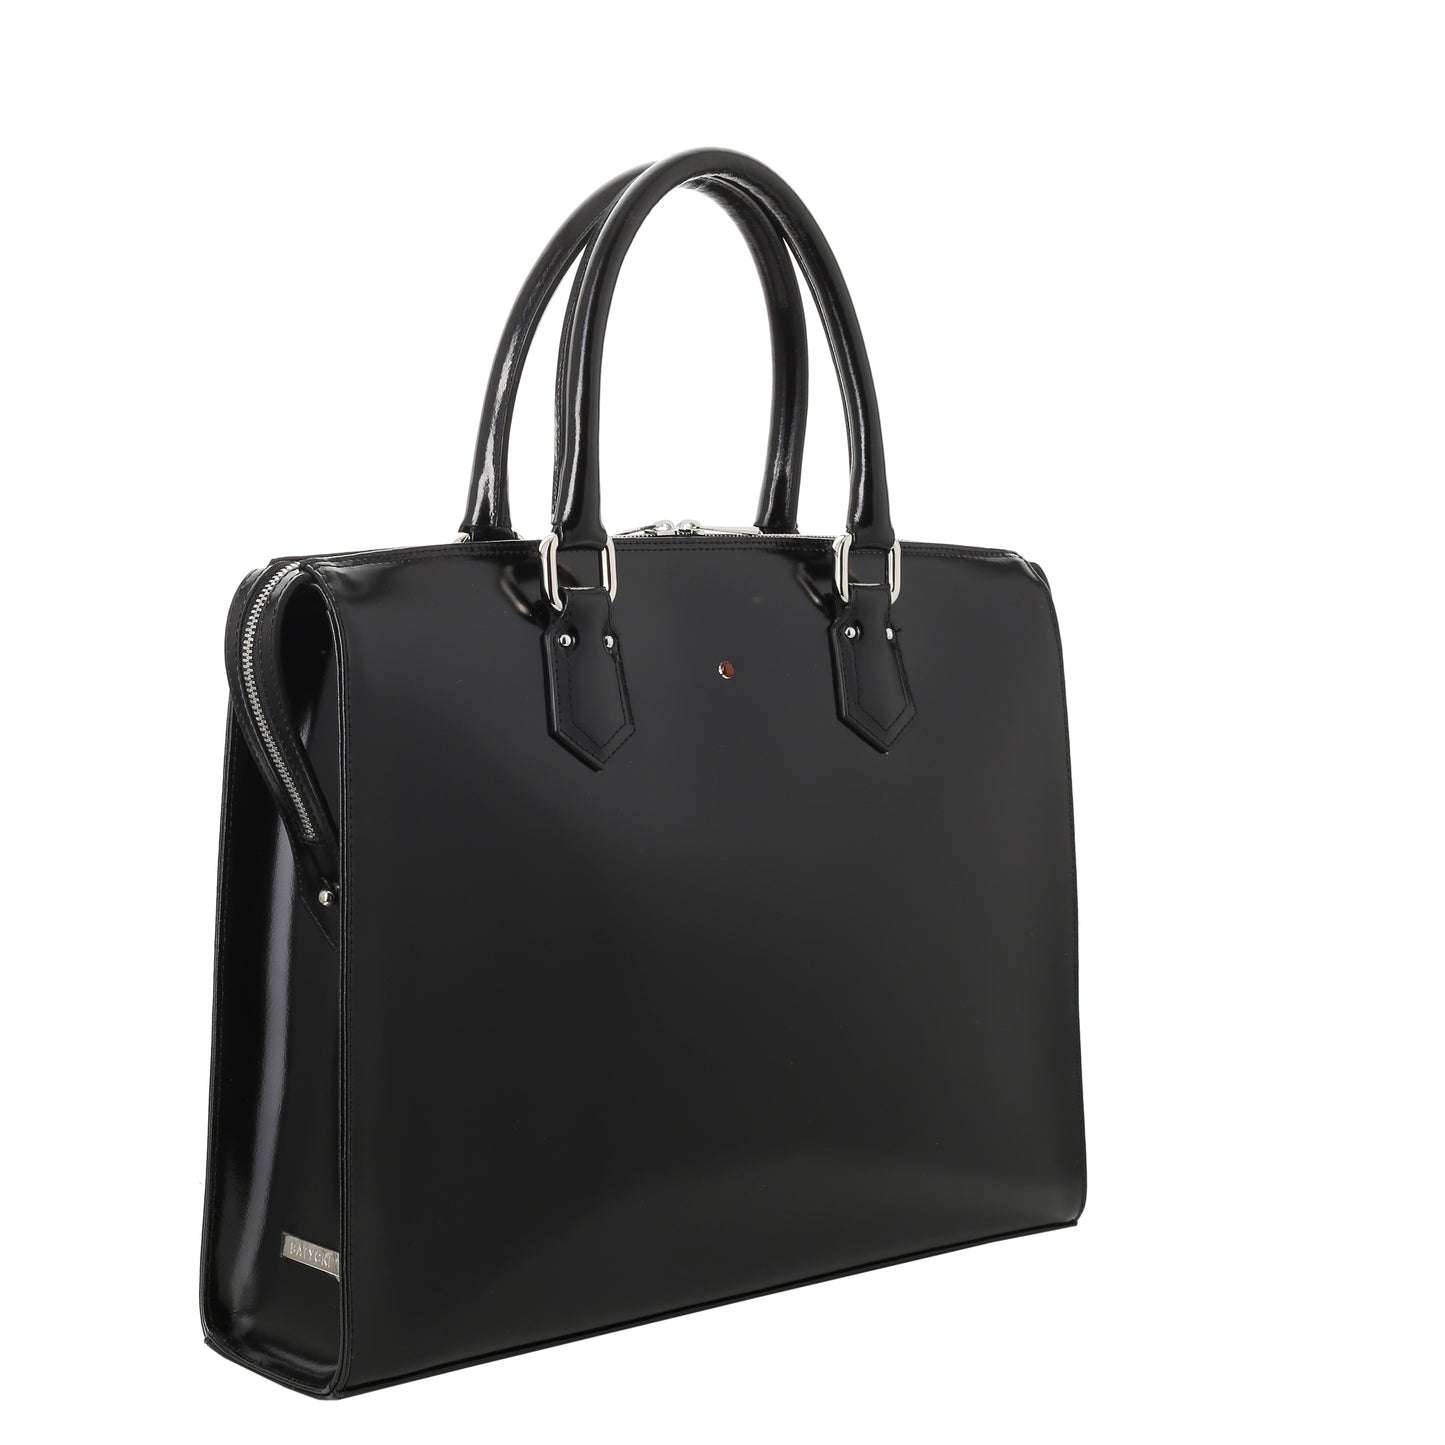 Women's leather briefcase HANA SPECCHIO BLACK